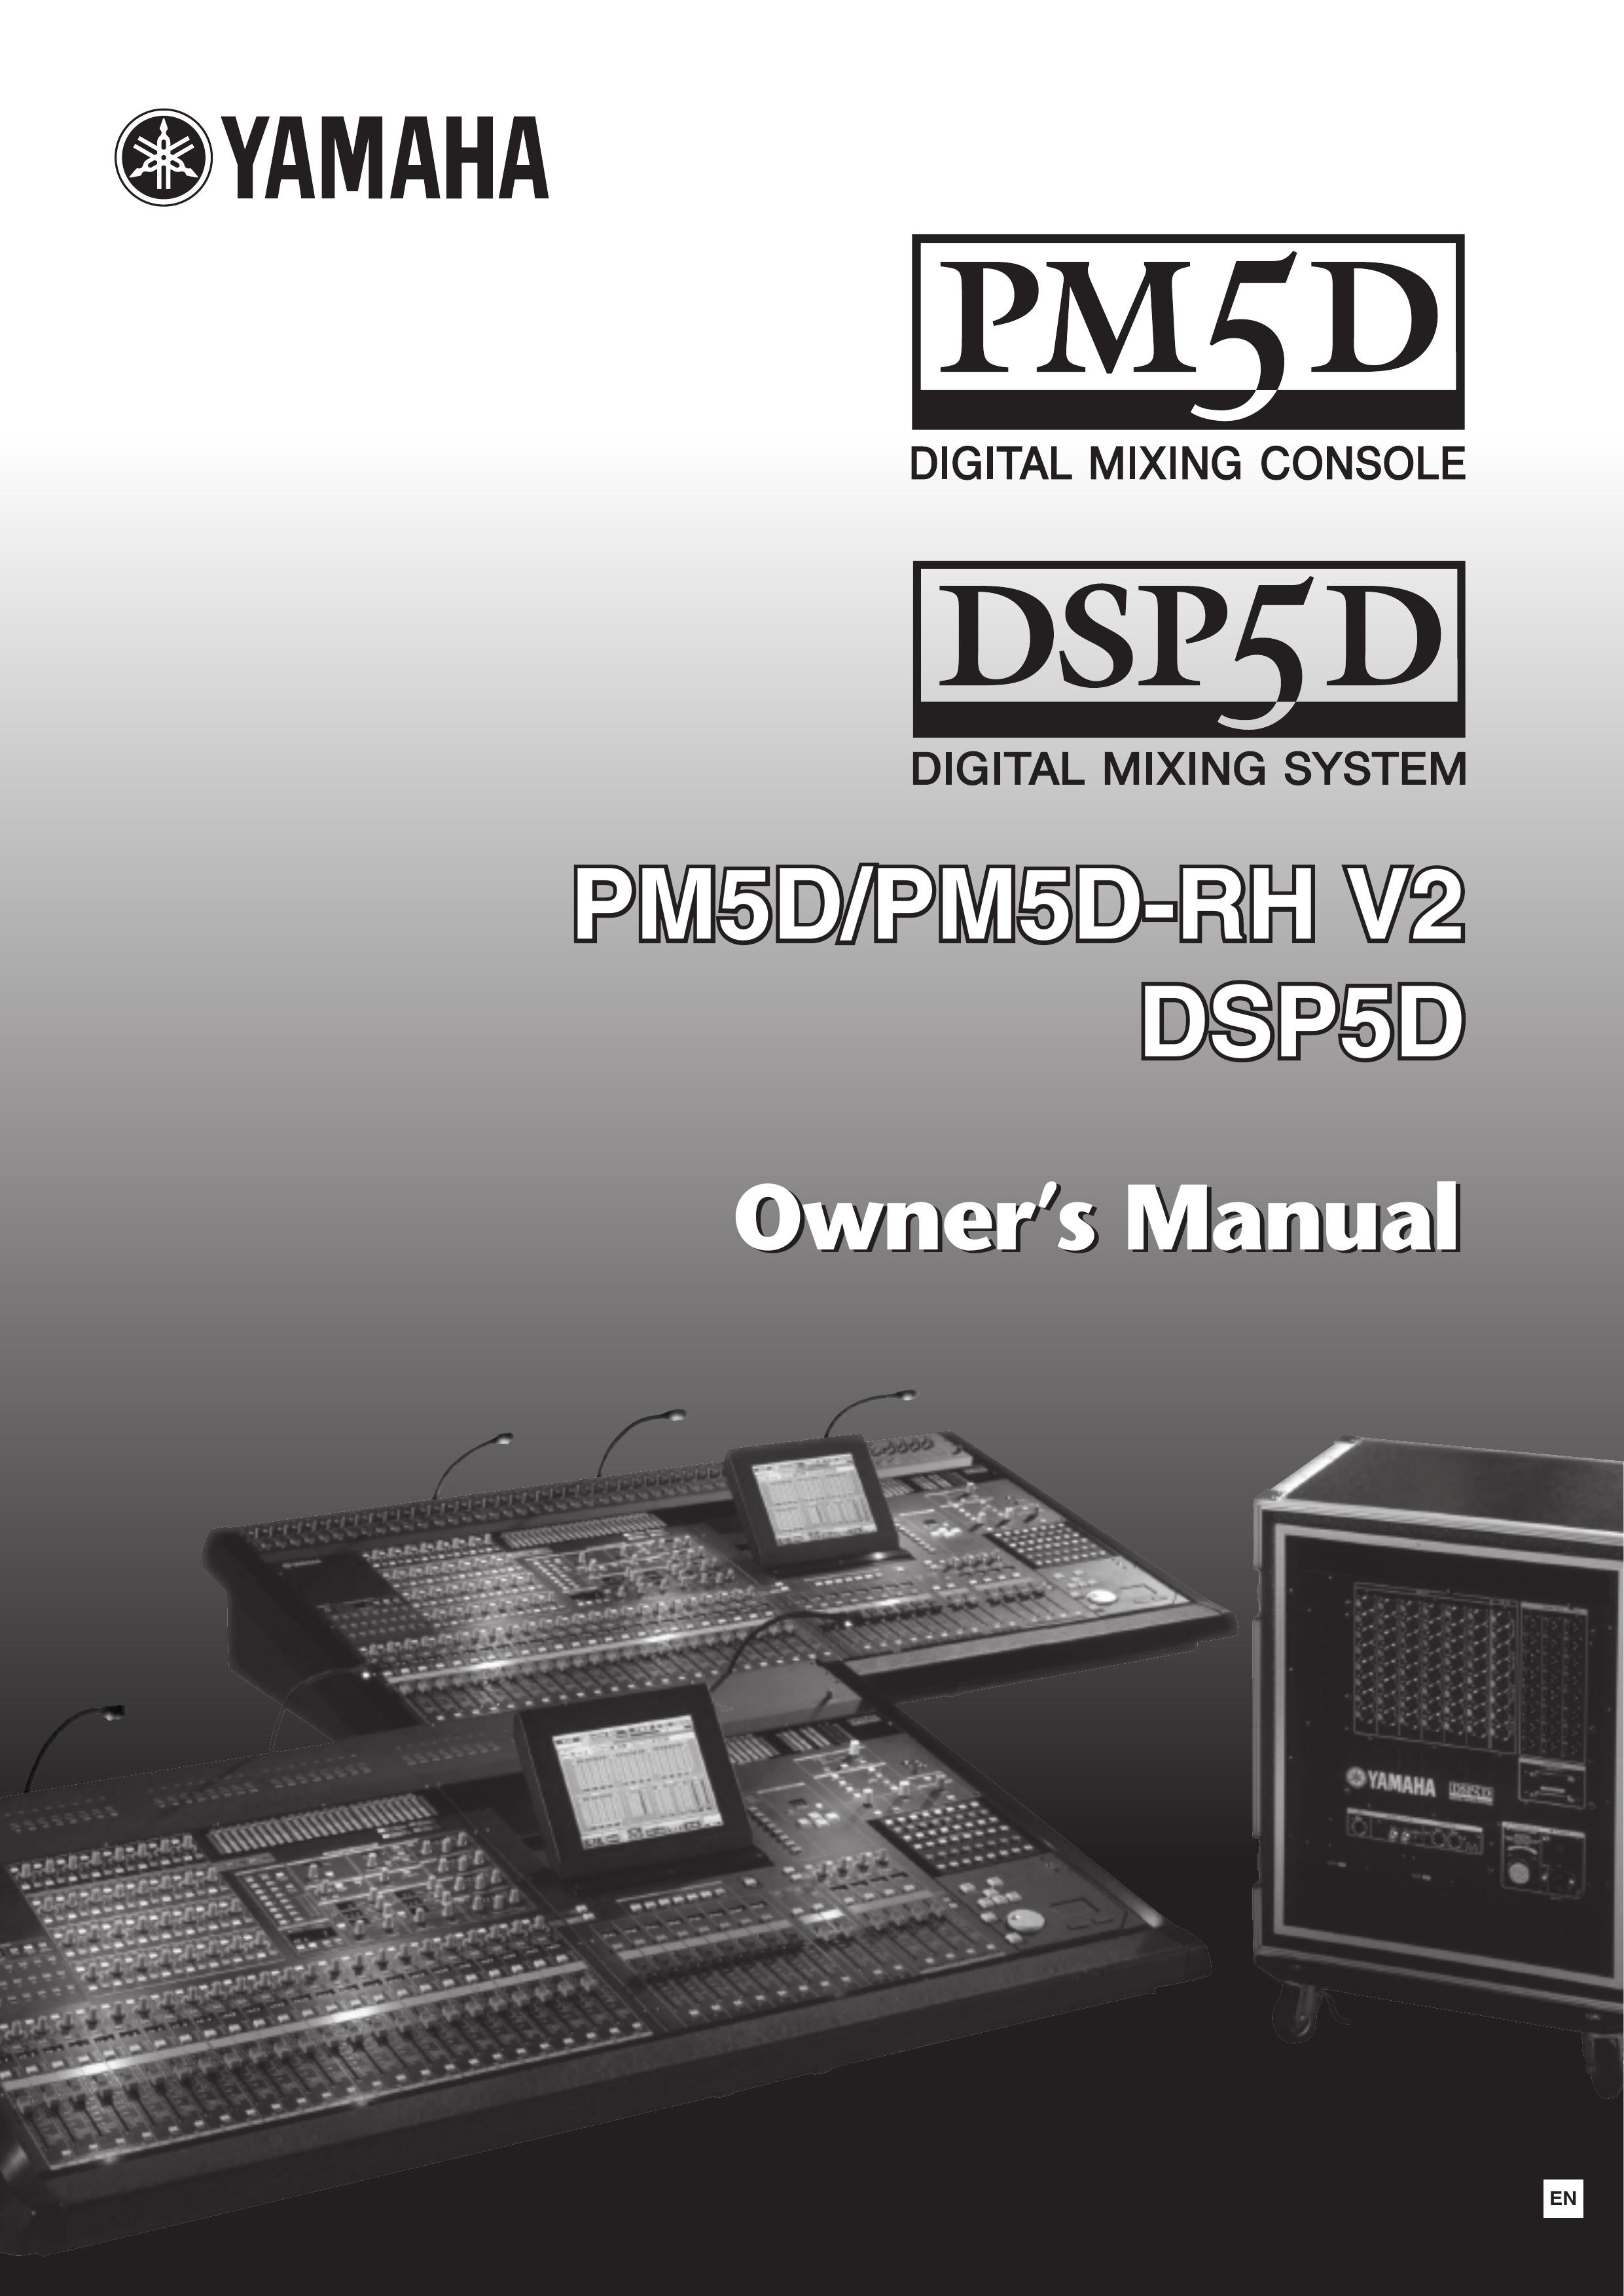 Yamaha DSP5D Music Mixer User Manual